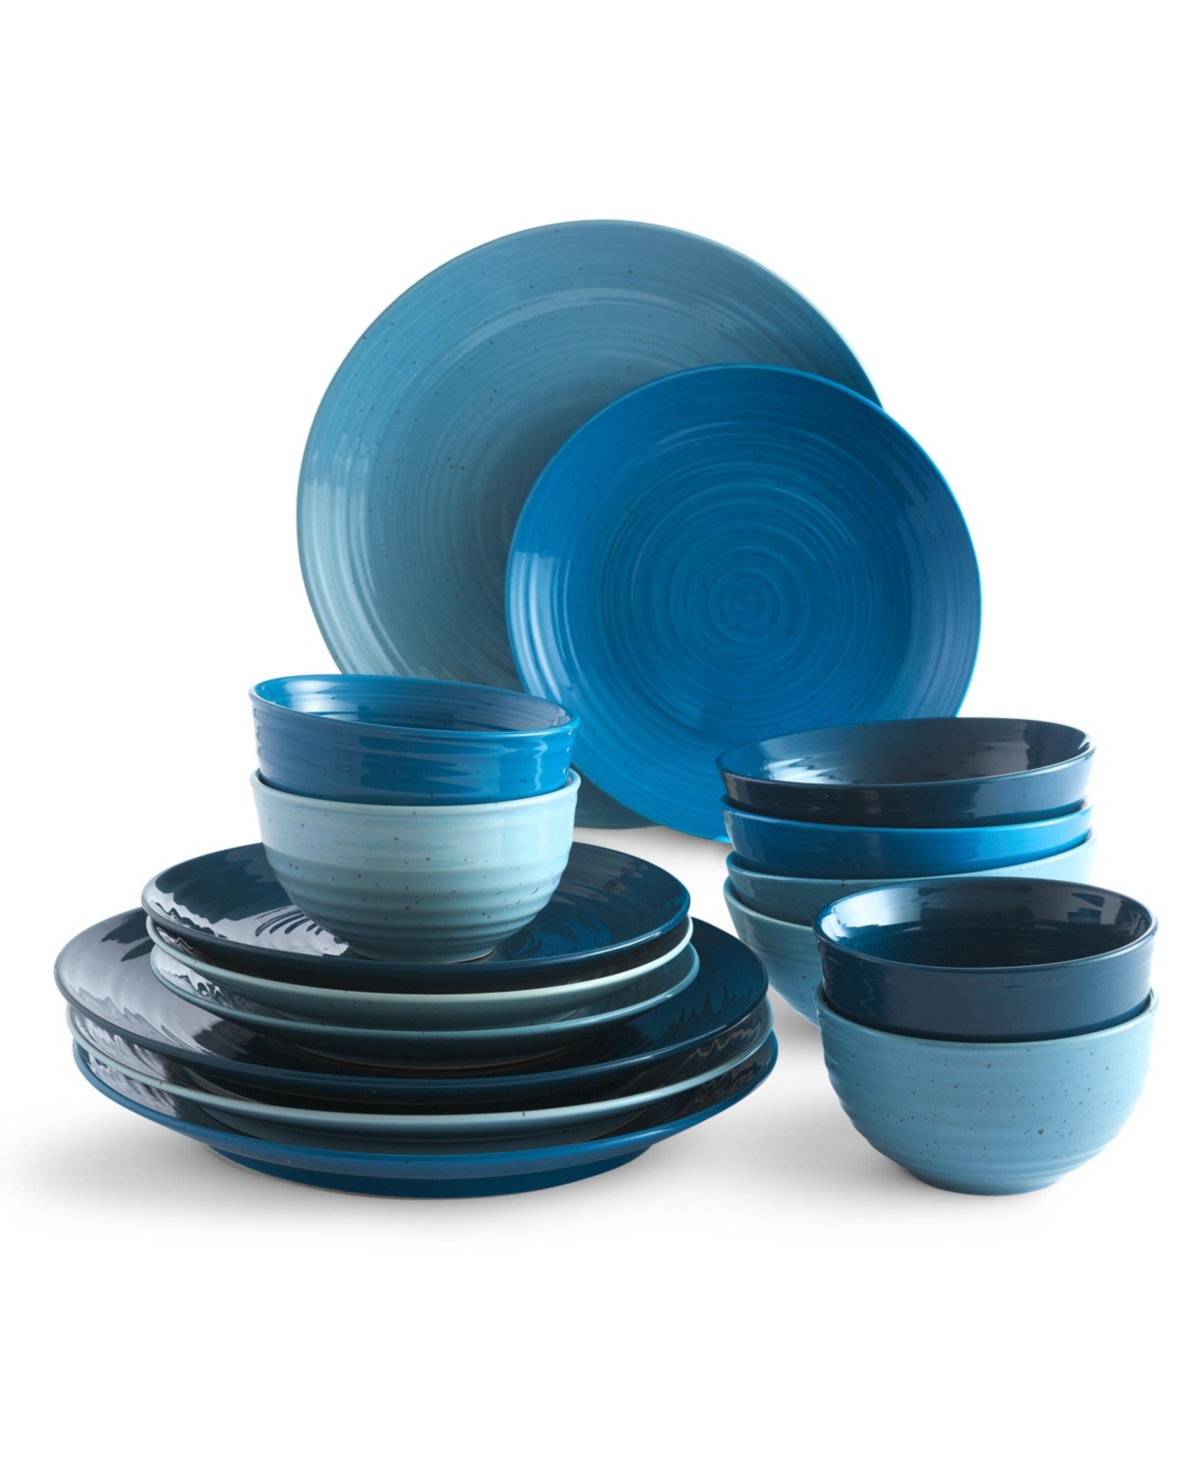 Siterra 16 Piece Dinnerware Set, Service for 4 - Blue